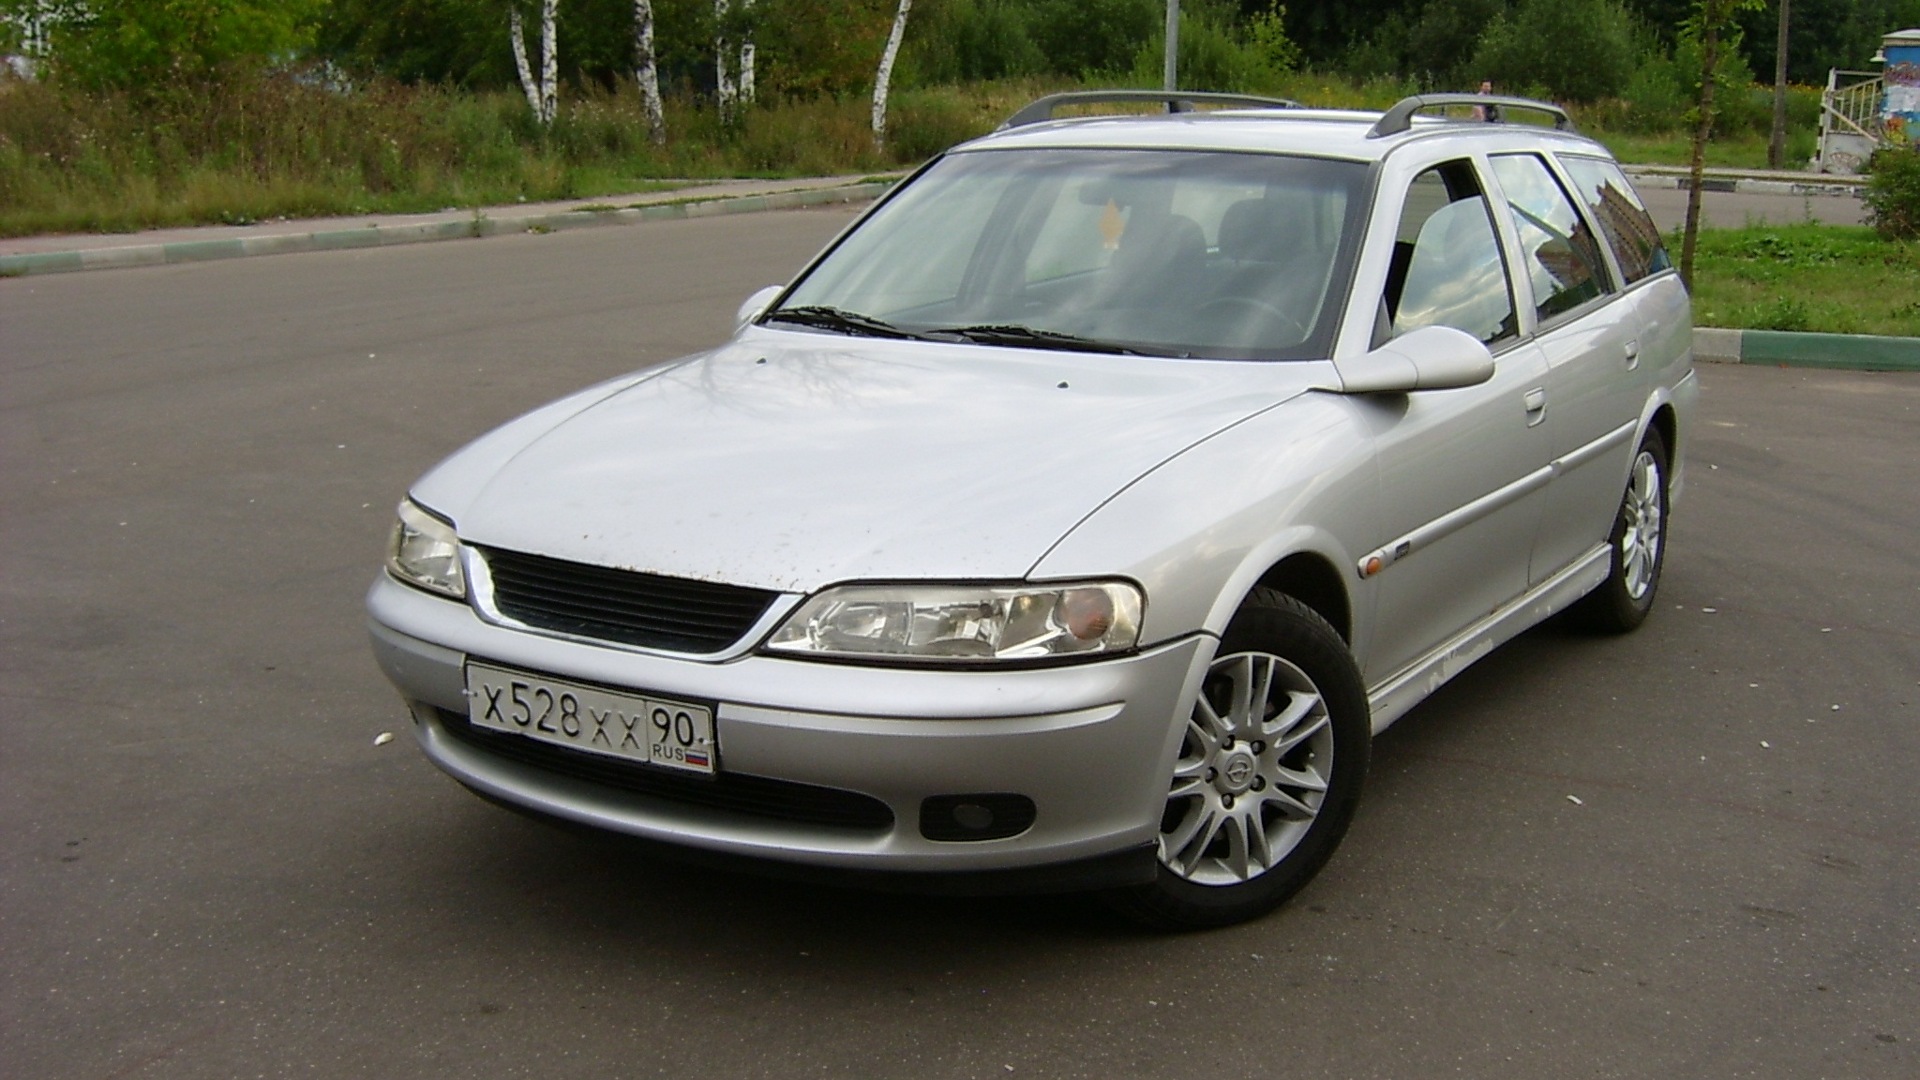 Opel Vectra 2000 универсал. Опель Вектра 2000 год выпуска серый. Вектра 2000 года выпуска. Опель Вектра 2000 года дизель фото.